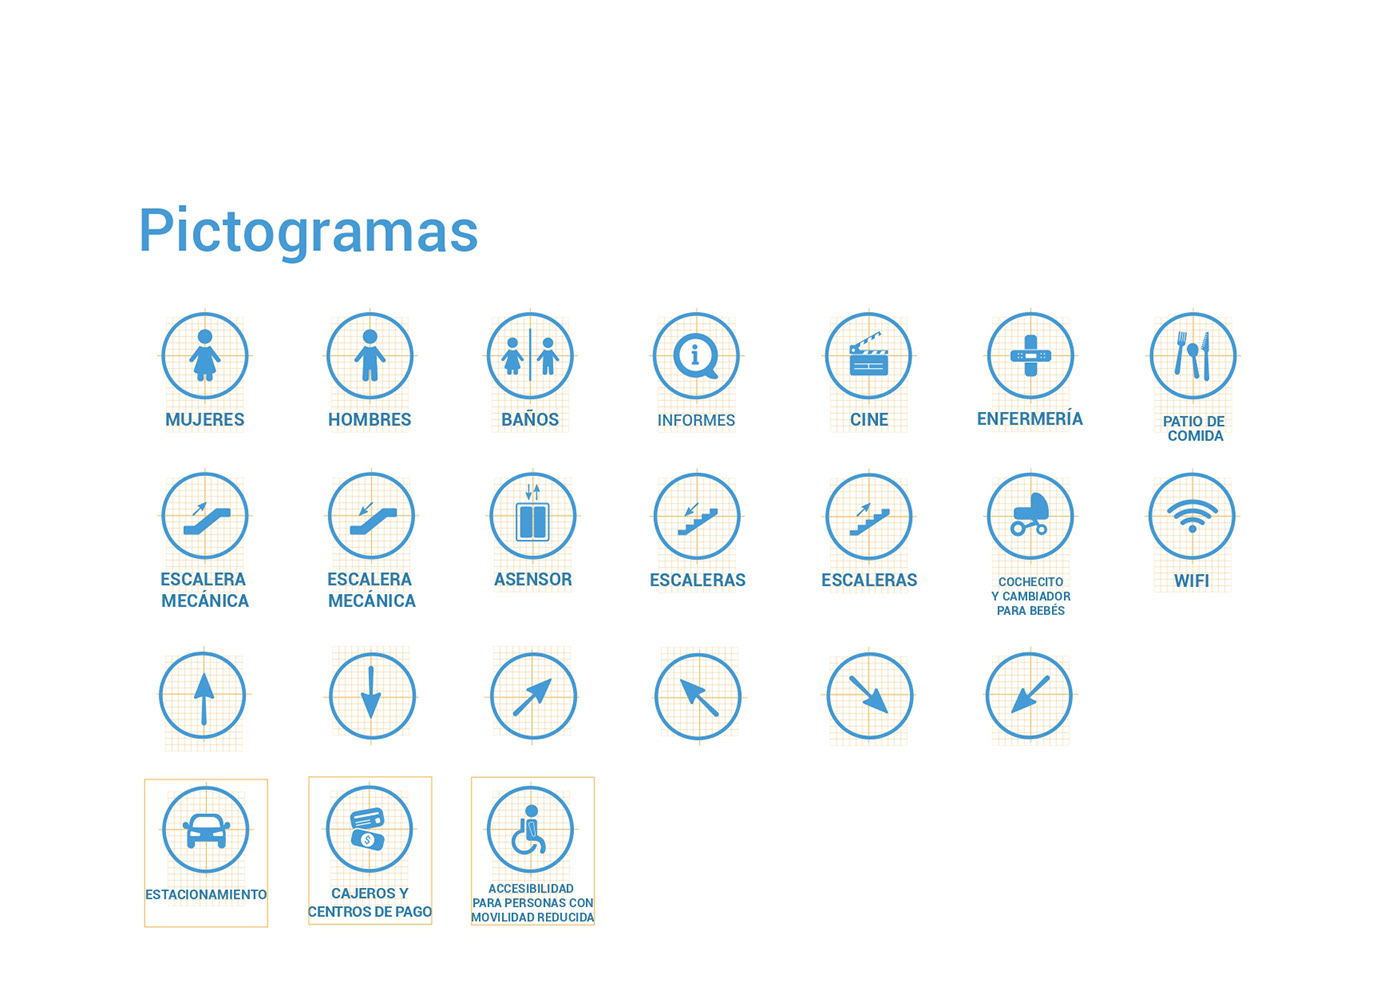 señaletica Diseño de información diseño gráfico graphic design  manual de señaletica señales pictogramas pictograms visual identity